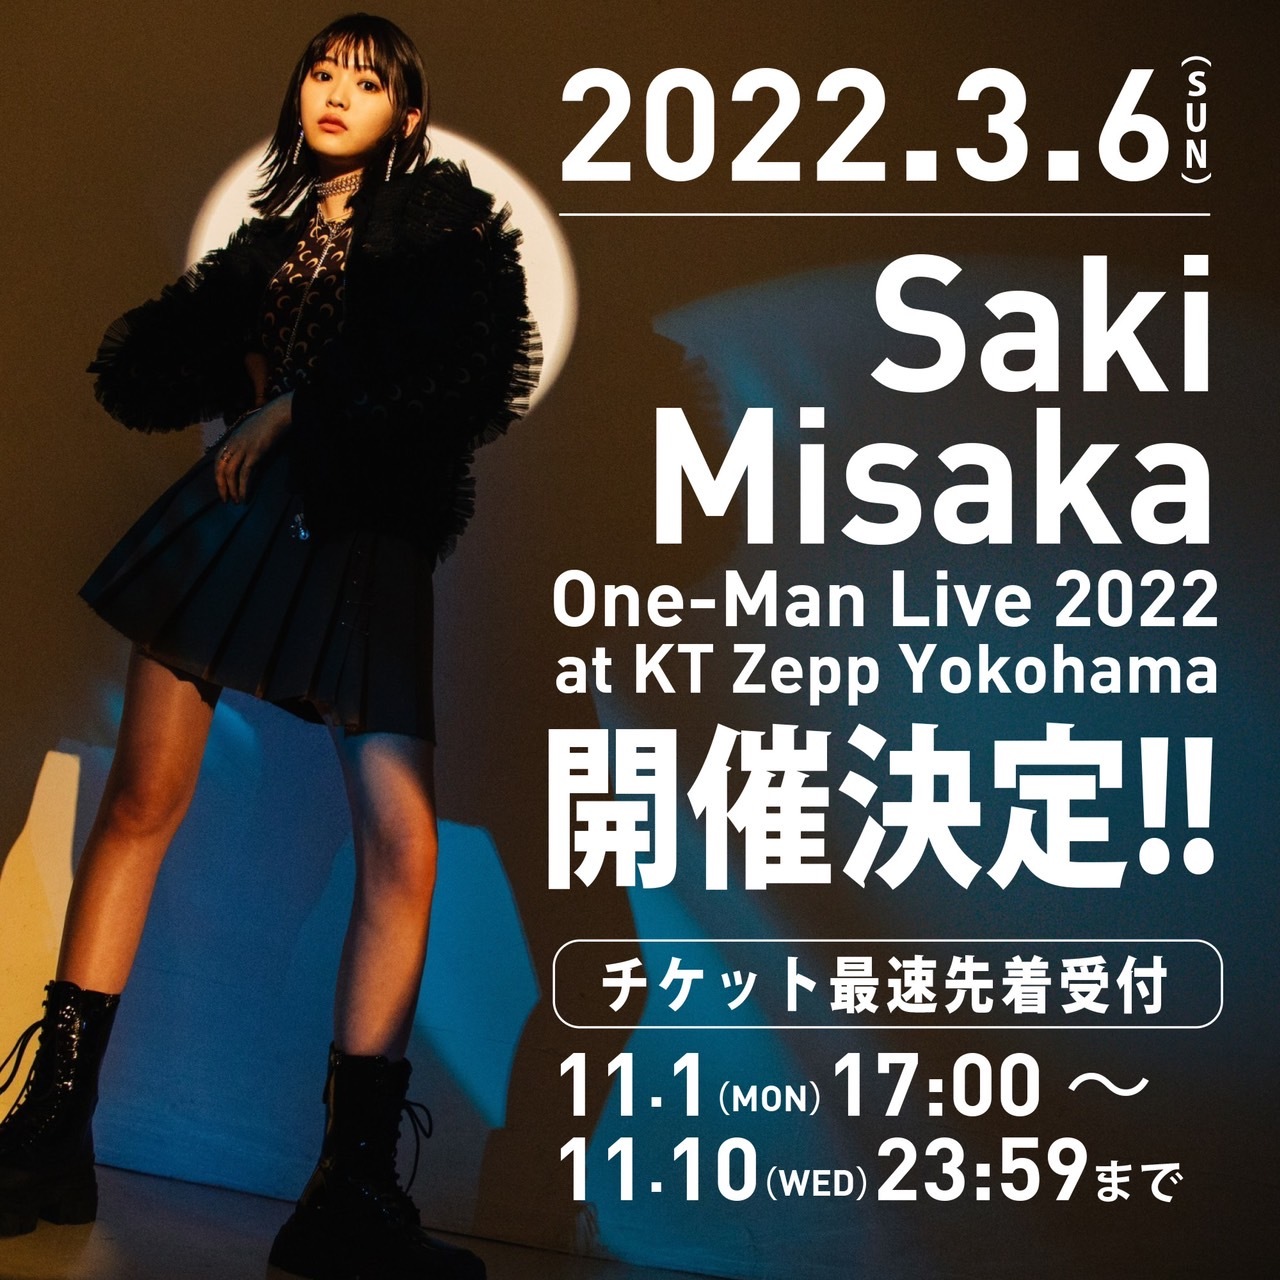 『Saki Misaka One-Man Live 2022 at KT ZEPP Yokohama』